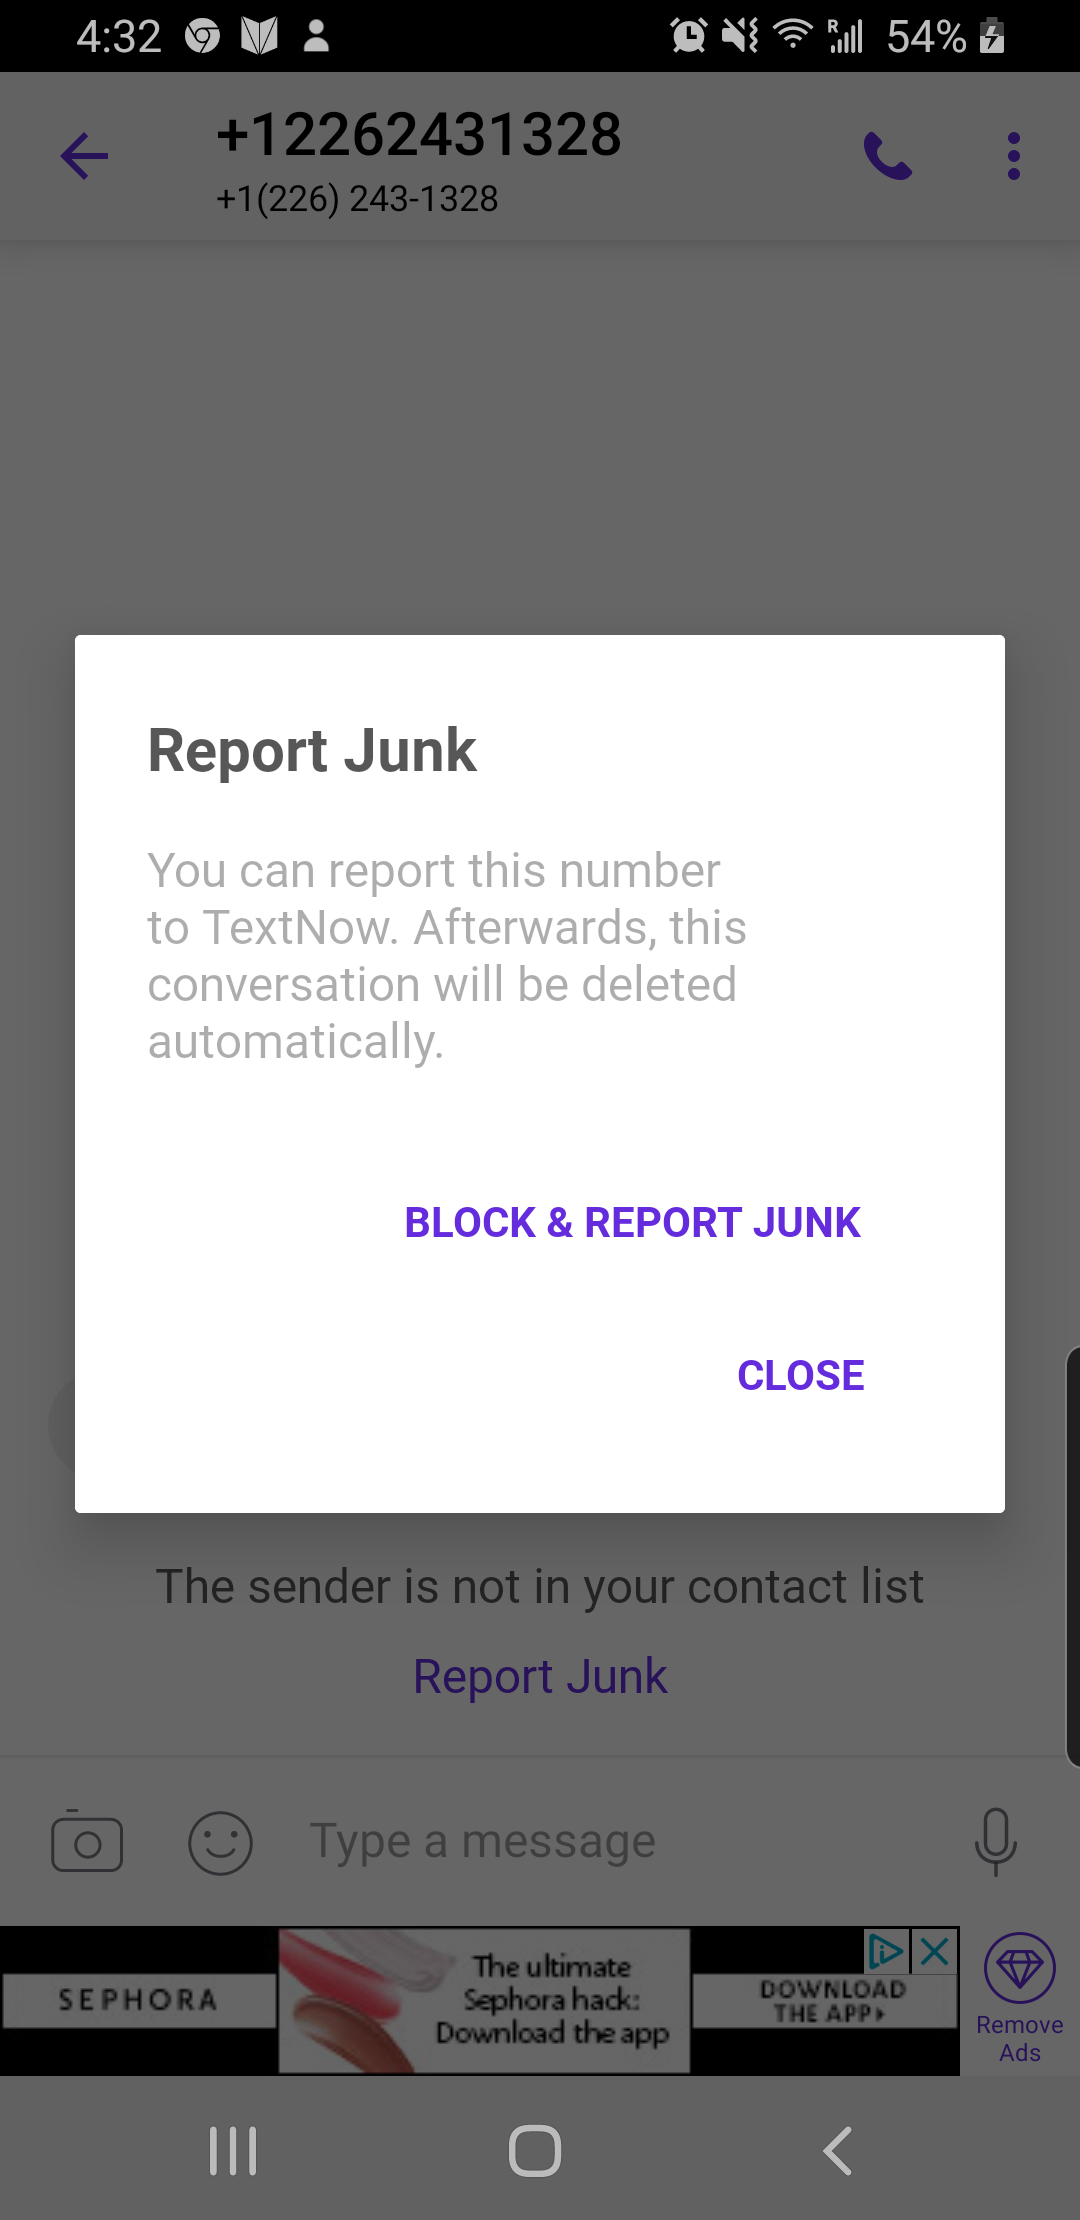 report_junk_prompt.png